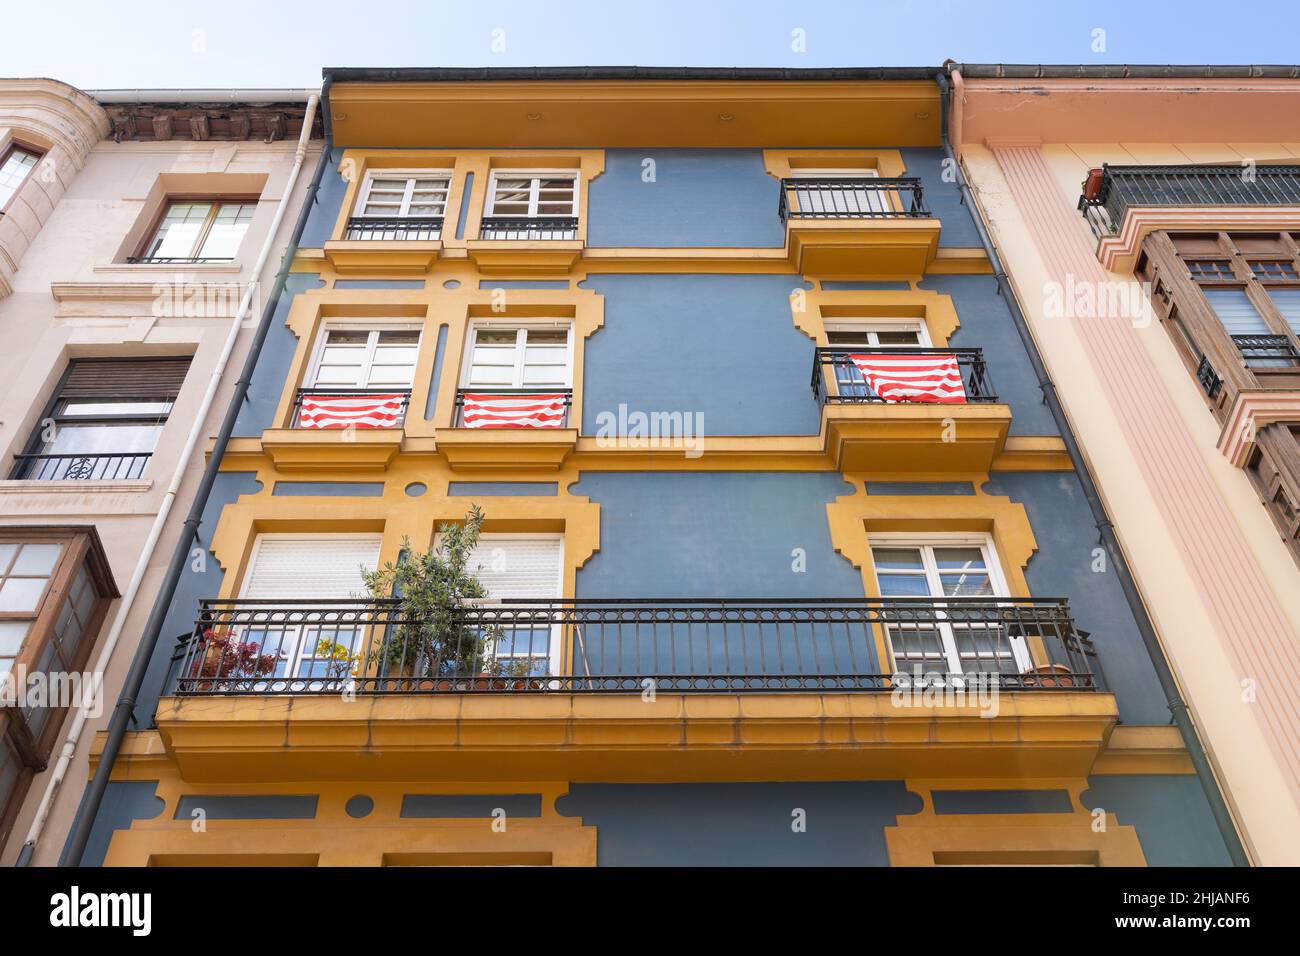 Gelbe Balkone an der Fassade eines Wohngebäudes mit roten und weißen Fahnen in Bilbao. Immobiliengeschäft, klassische Architekturkonzepte Stockfoto